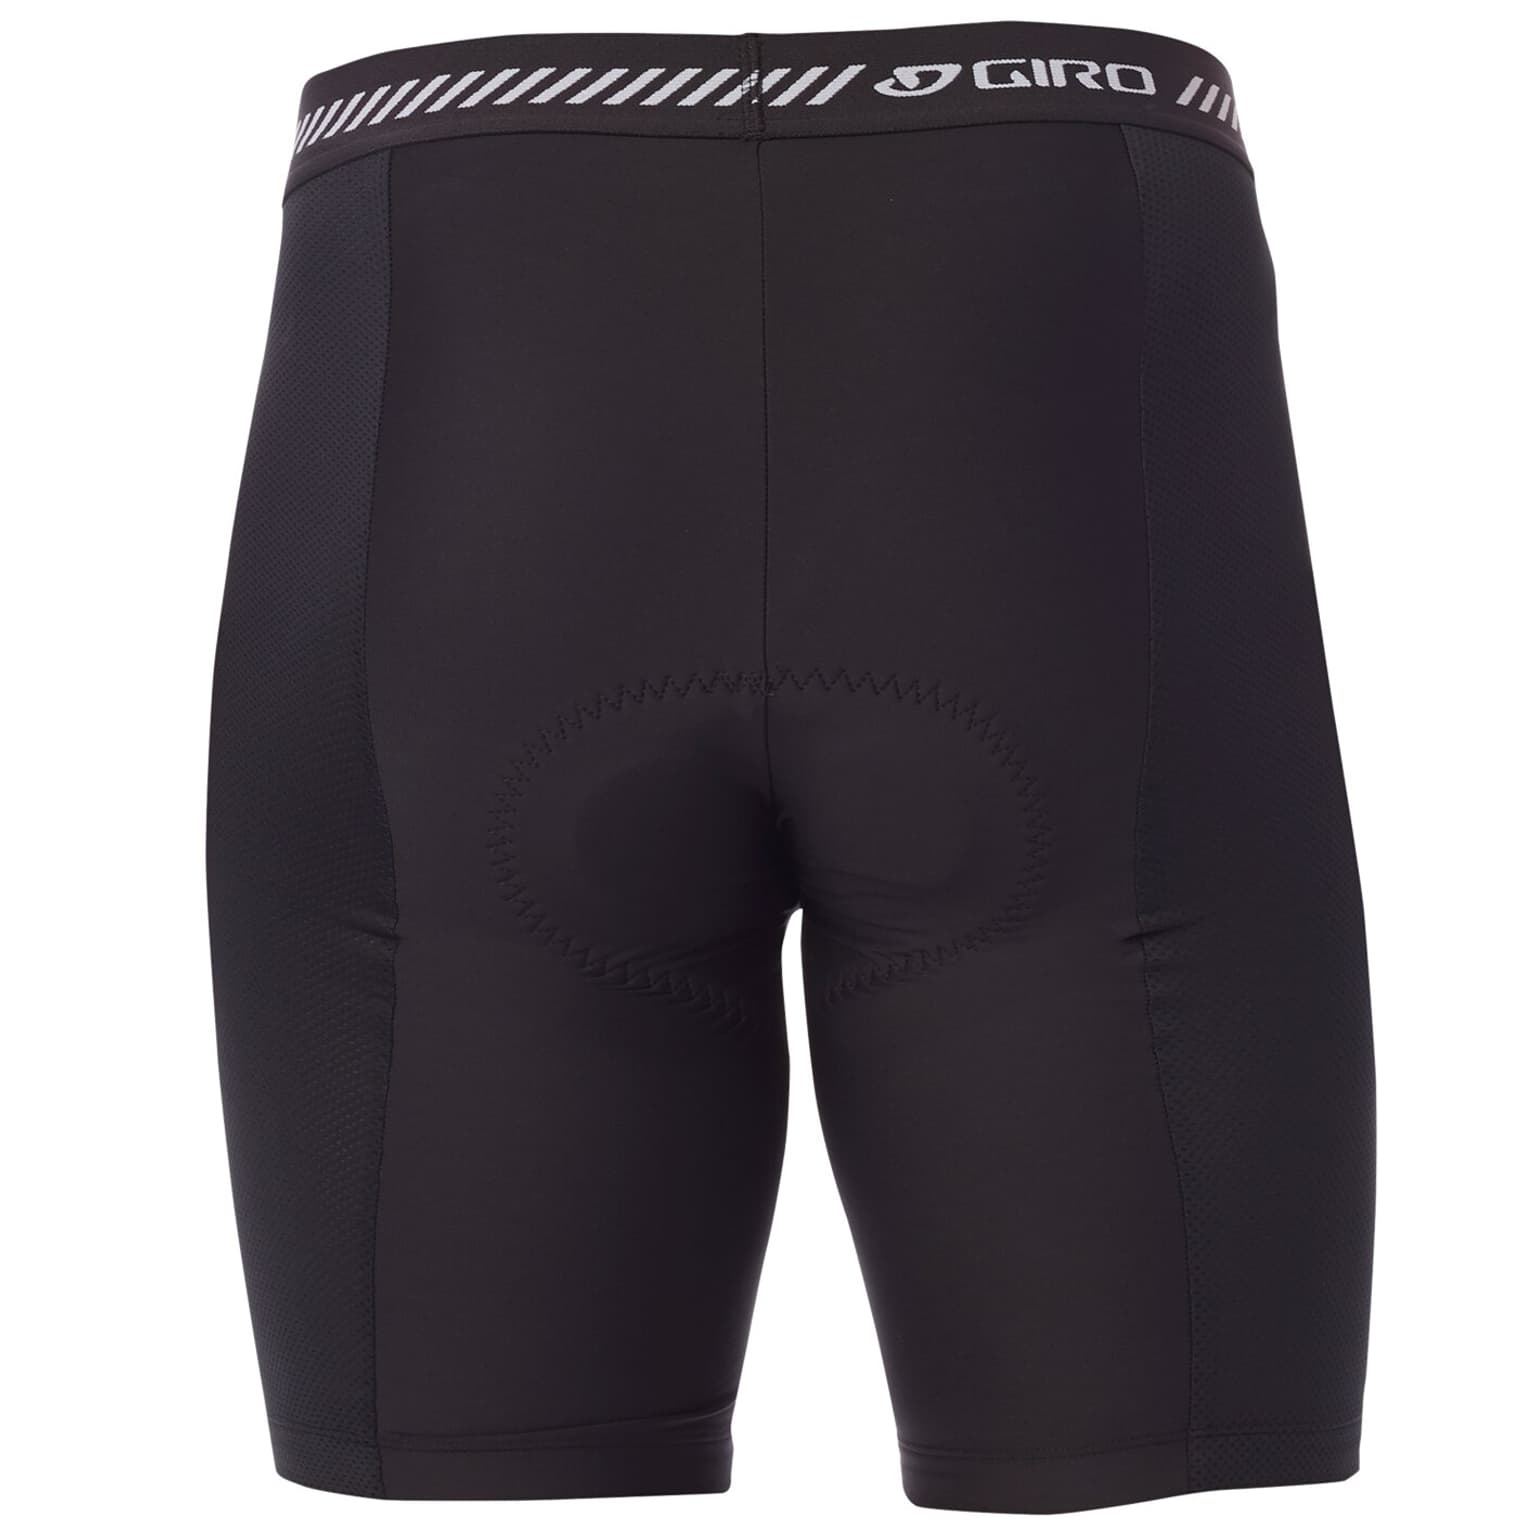 Giro Giro M Base Liner Short Pantalon de cyclisme noir 2